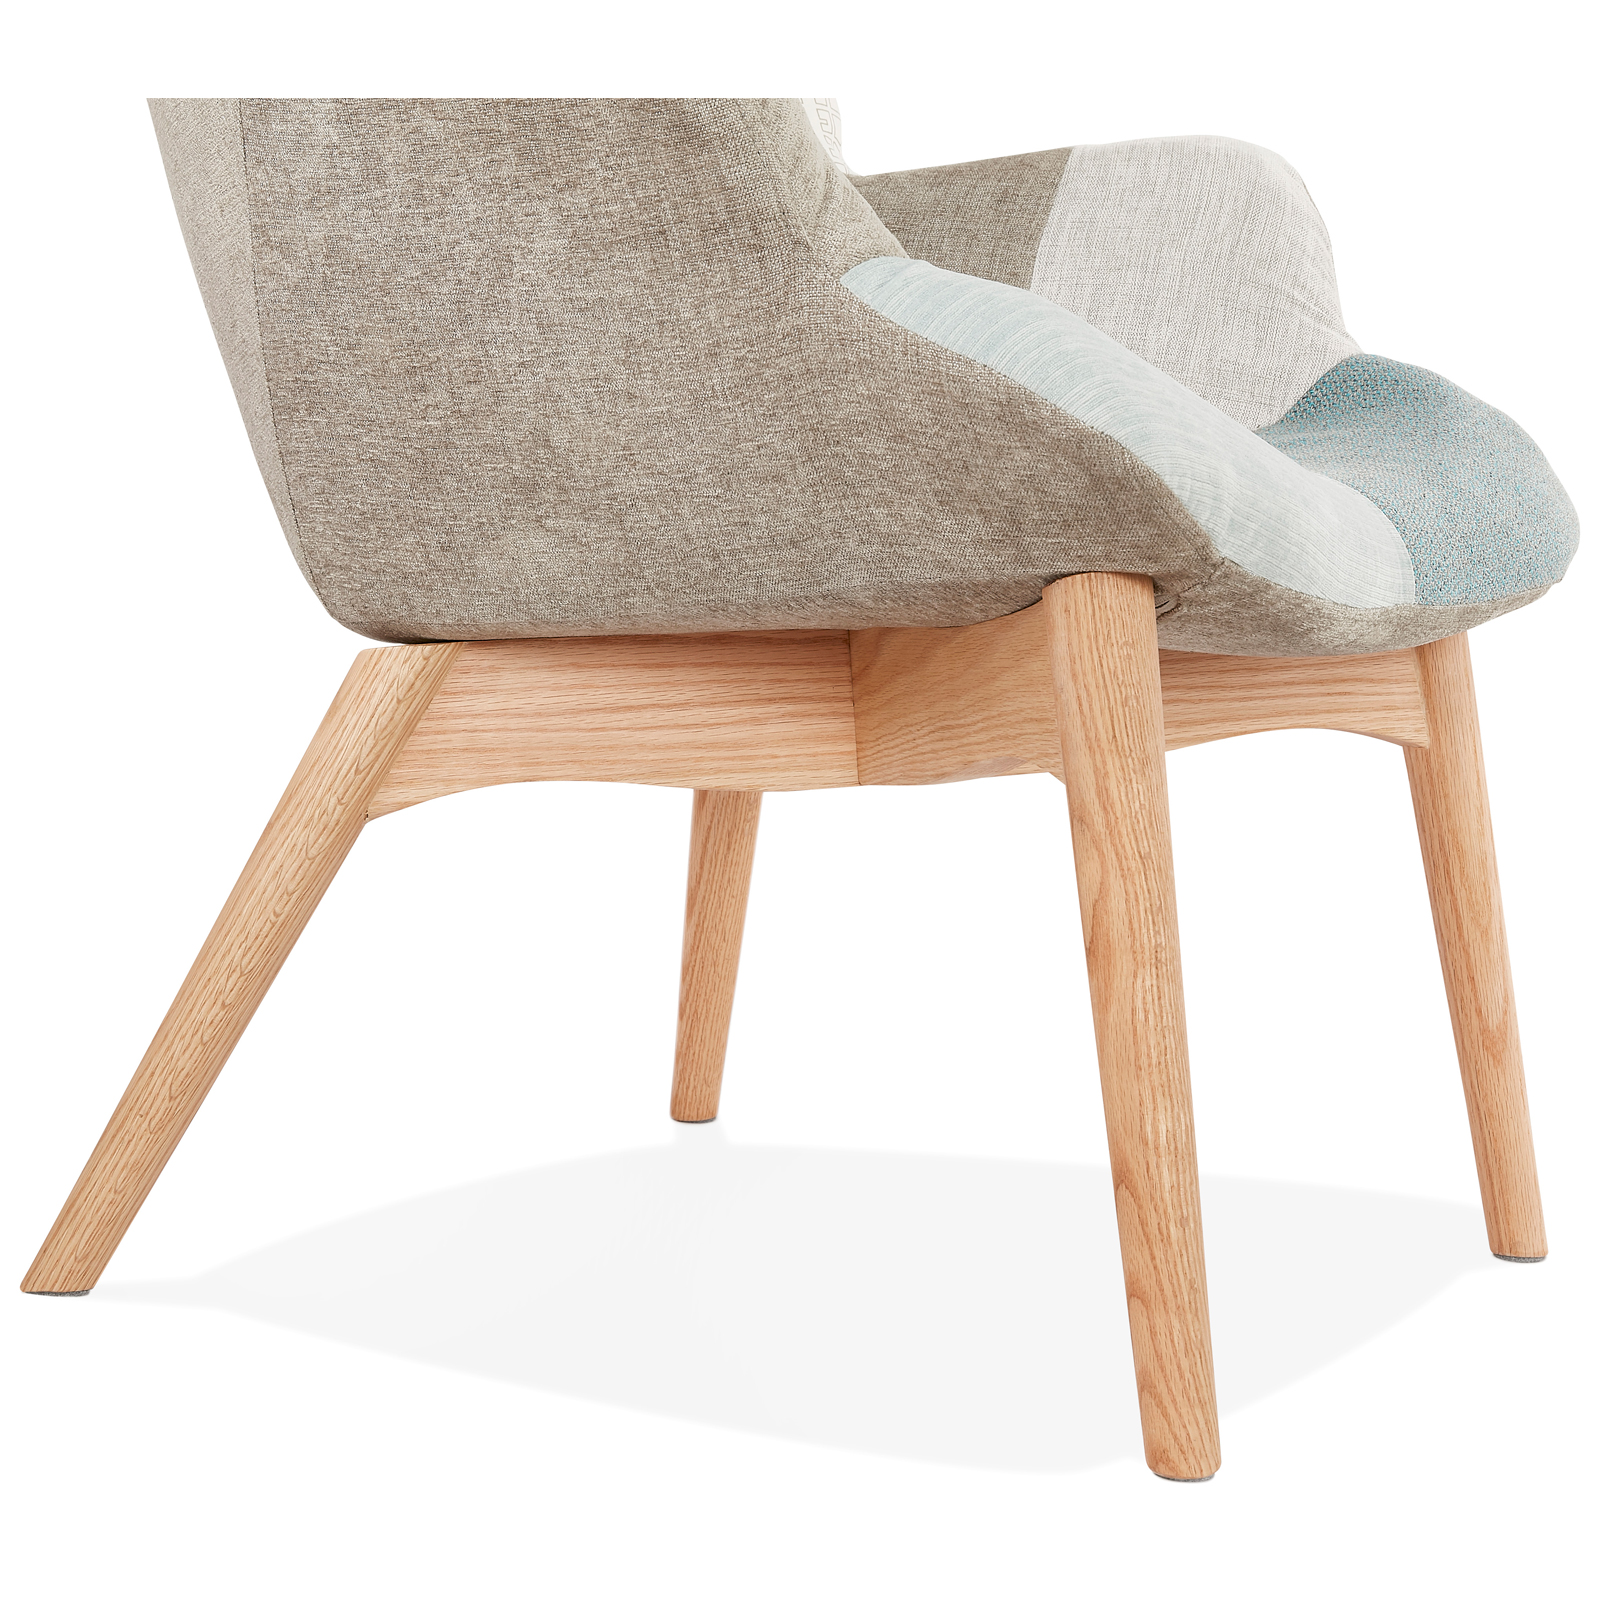 Grondig veel plezier Omgekeerde Design fauteuil Scandinavisch Marijke kopen? Shop bij Kameraankleden.nl